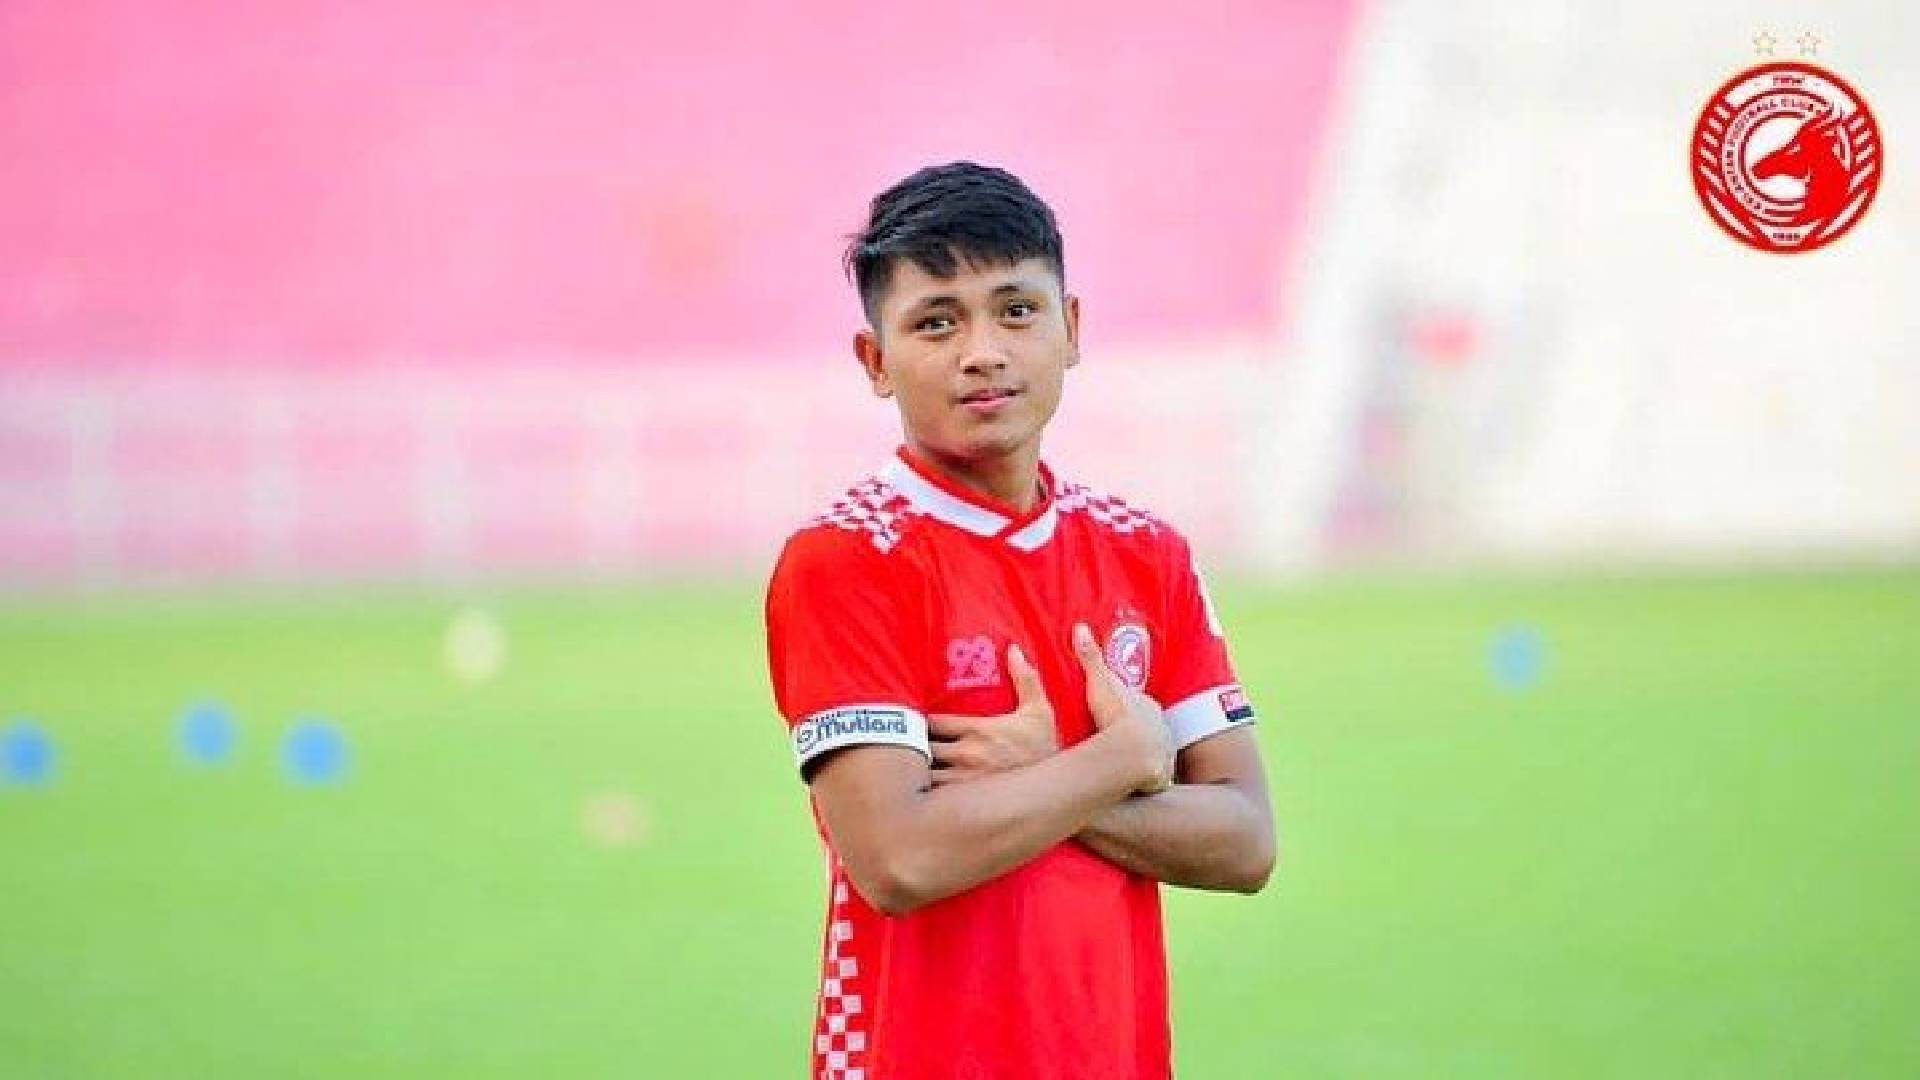 Natanael Siringoringo TRW Kelantan FC Kelantan Bakal Panggil Semula Pemain Import Indonesia Perkuat Pasukan